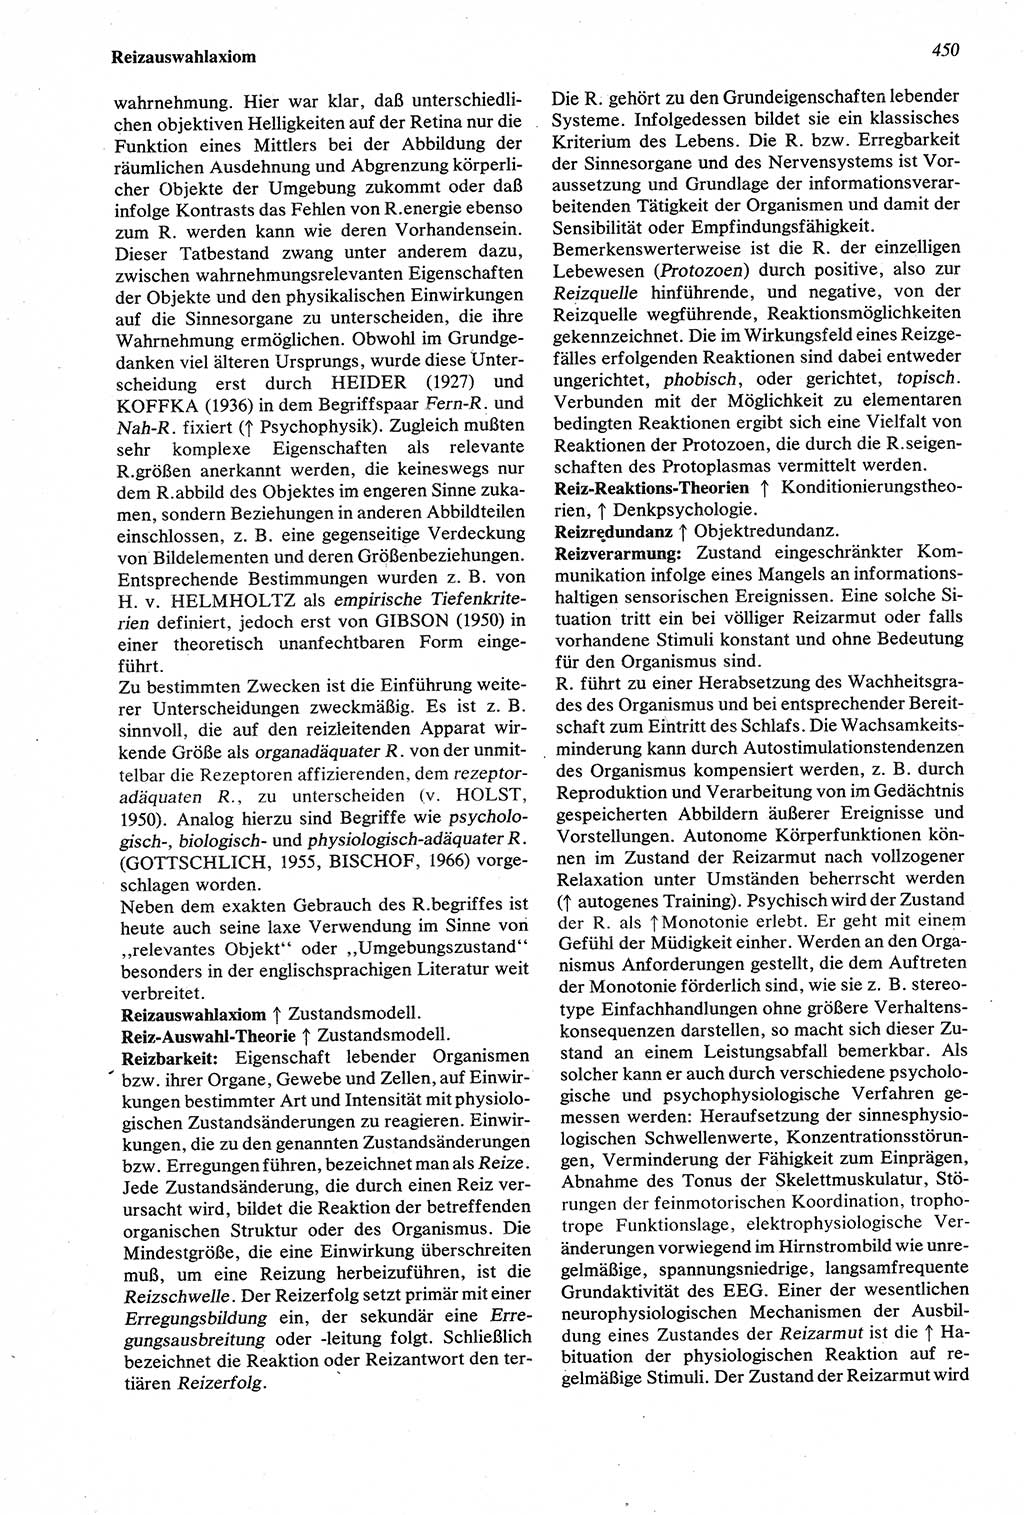 Wörterbuch der Psychologie [Deutsche Demokratische Republik (DDR)] 1976, Seite 450 (Wb. Psych. DDR 1976, S. 450)